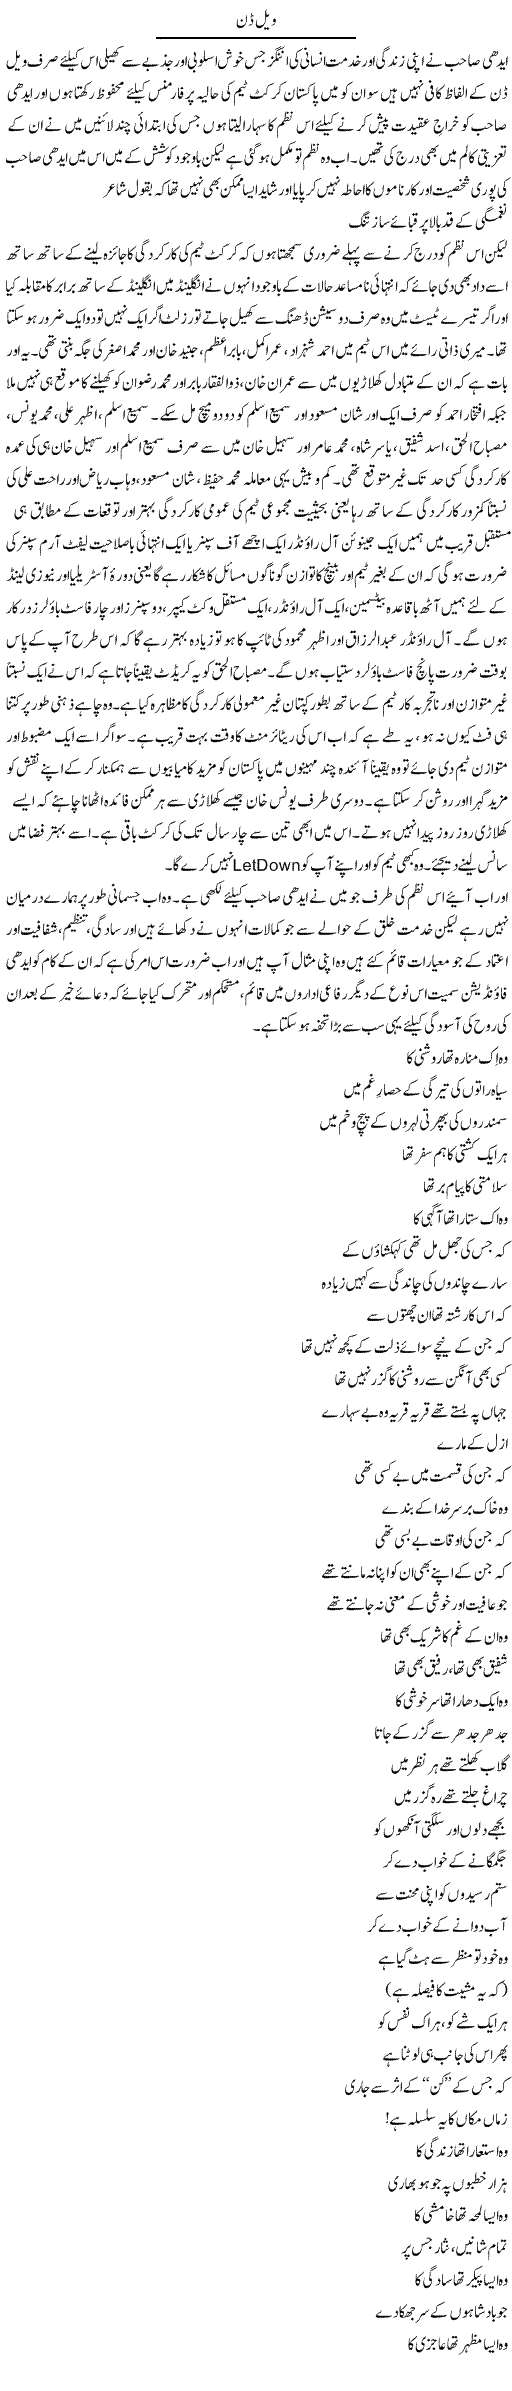 Well Done | Amjad Islam Amjad | Daily Urdu Columns